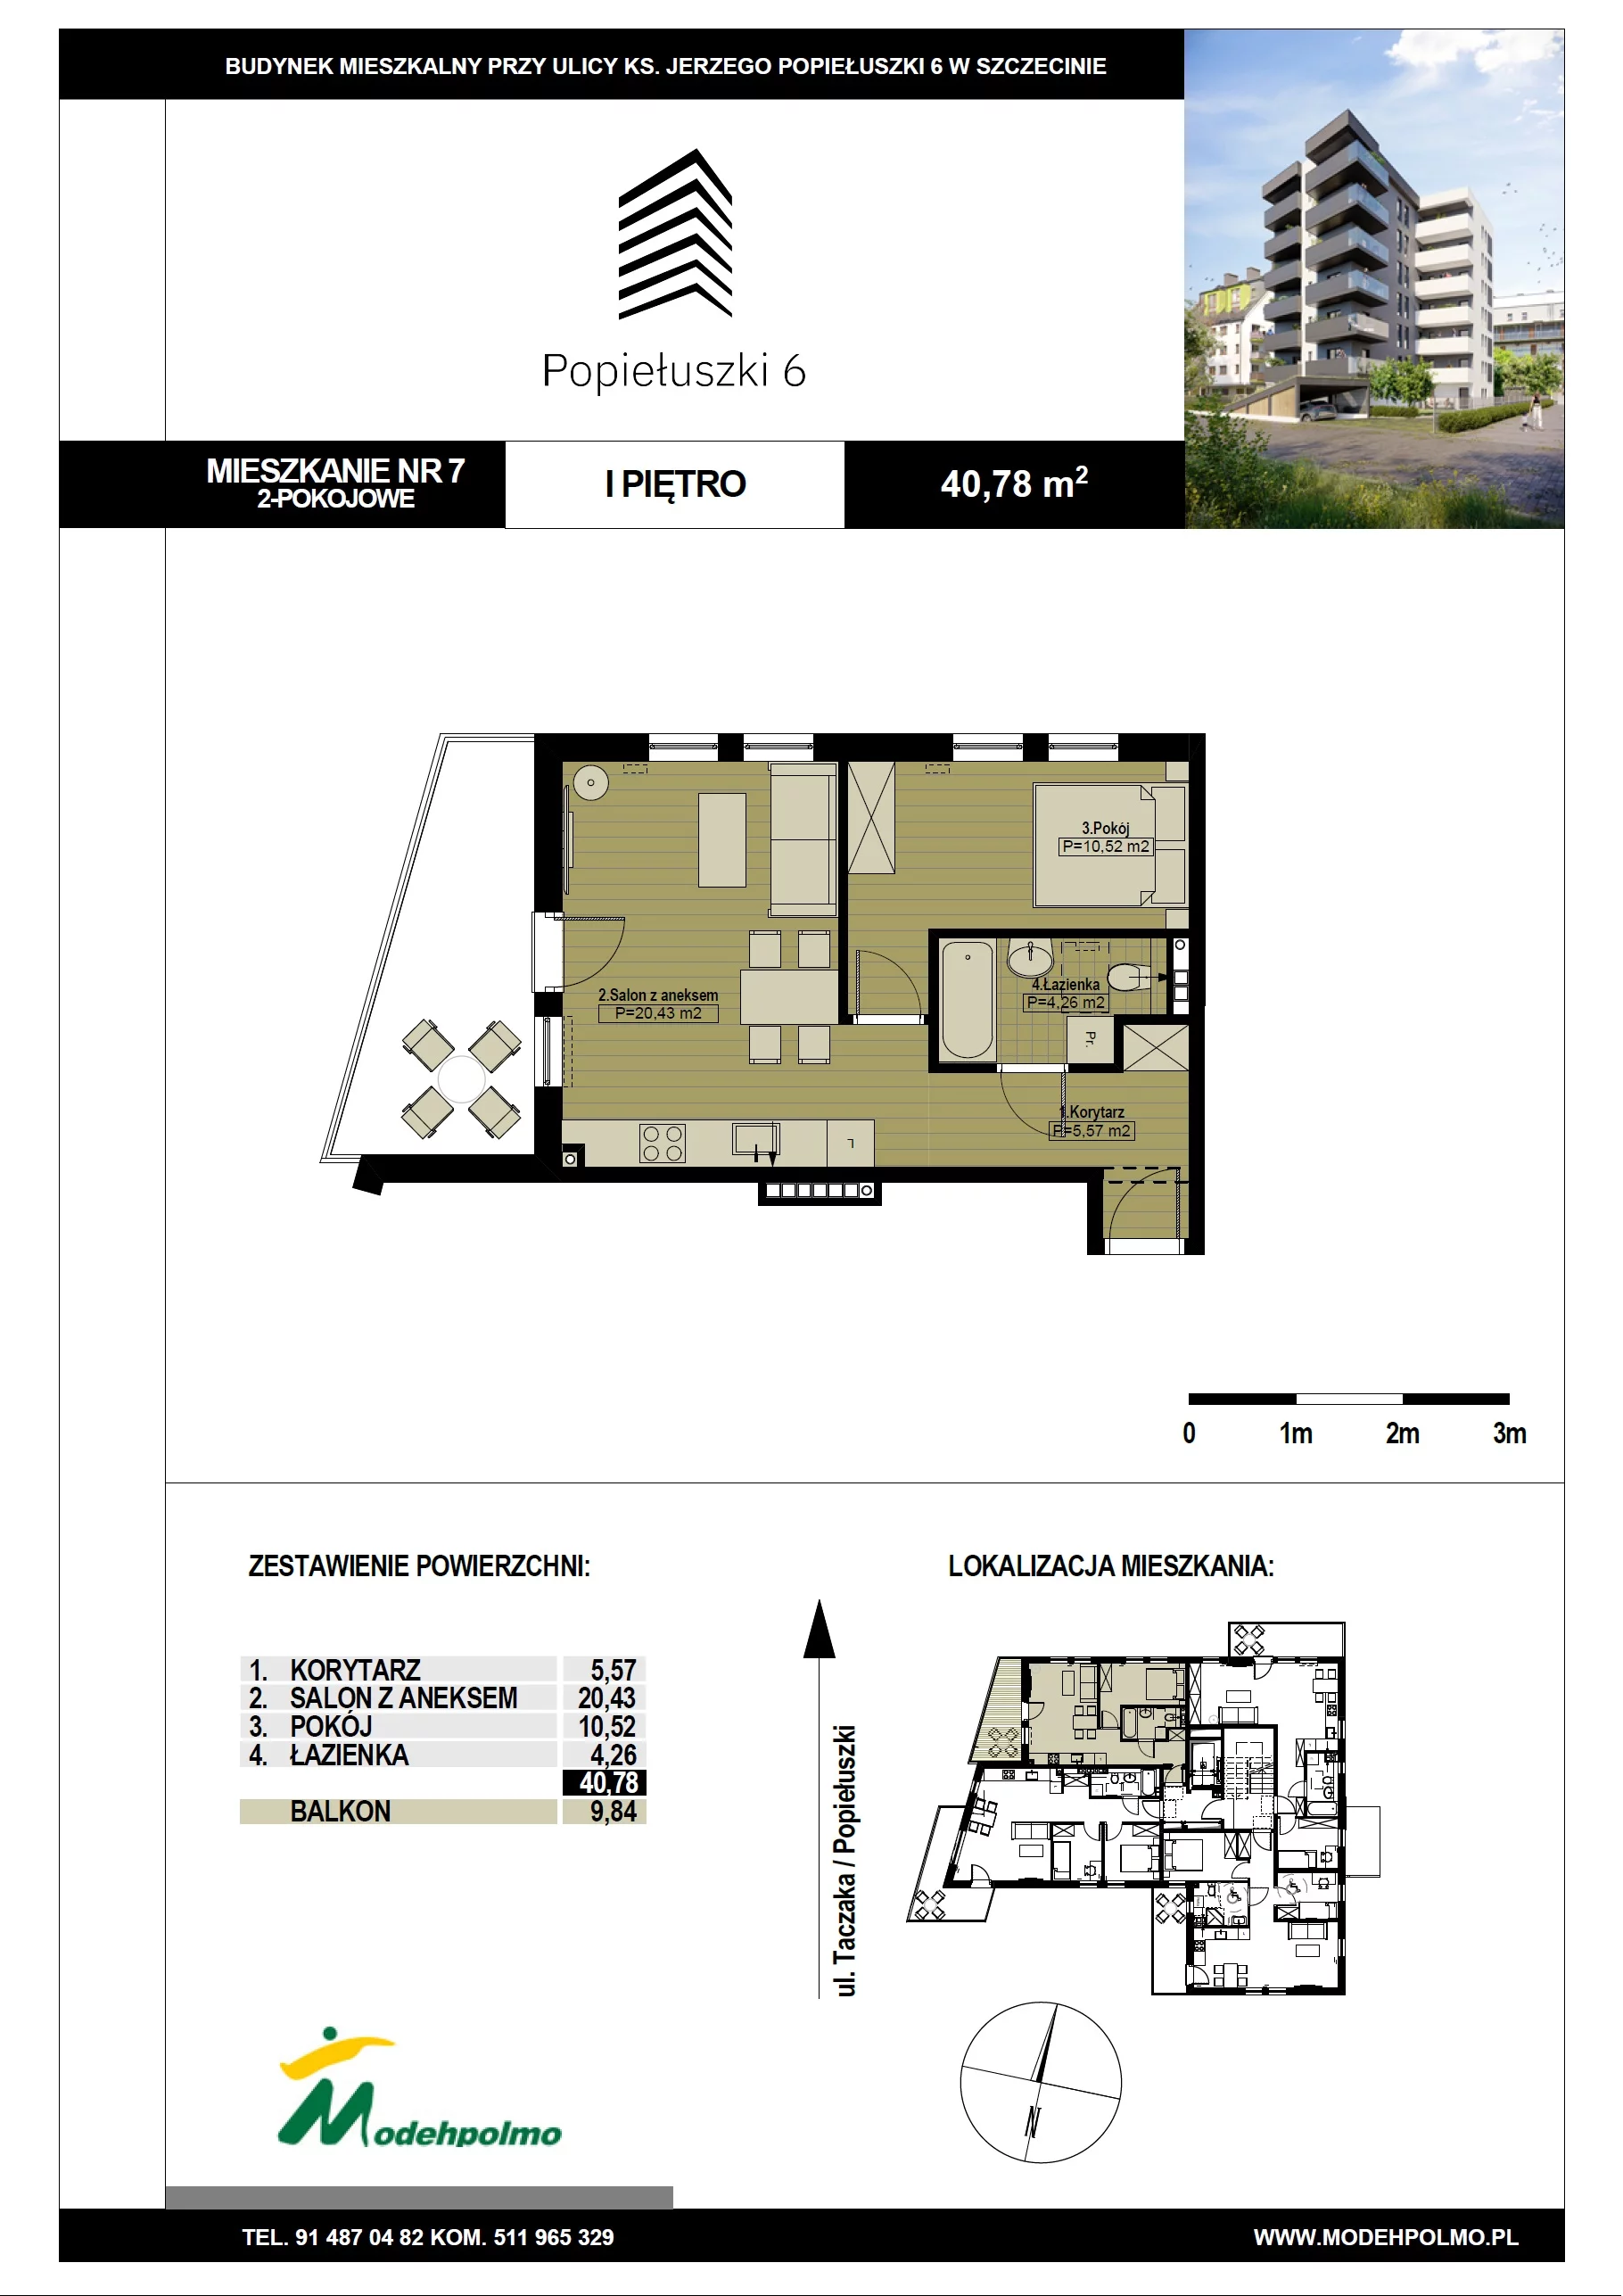 Mieszkanie 40,78 m², piętro 1, oferta nr 7, Popiełuszki, Szczecin, Zachód, Pogodno, ul. Popiełuszki 6